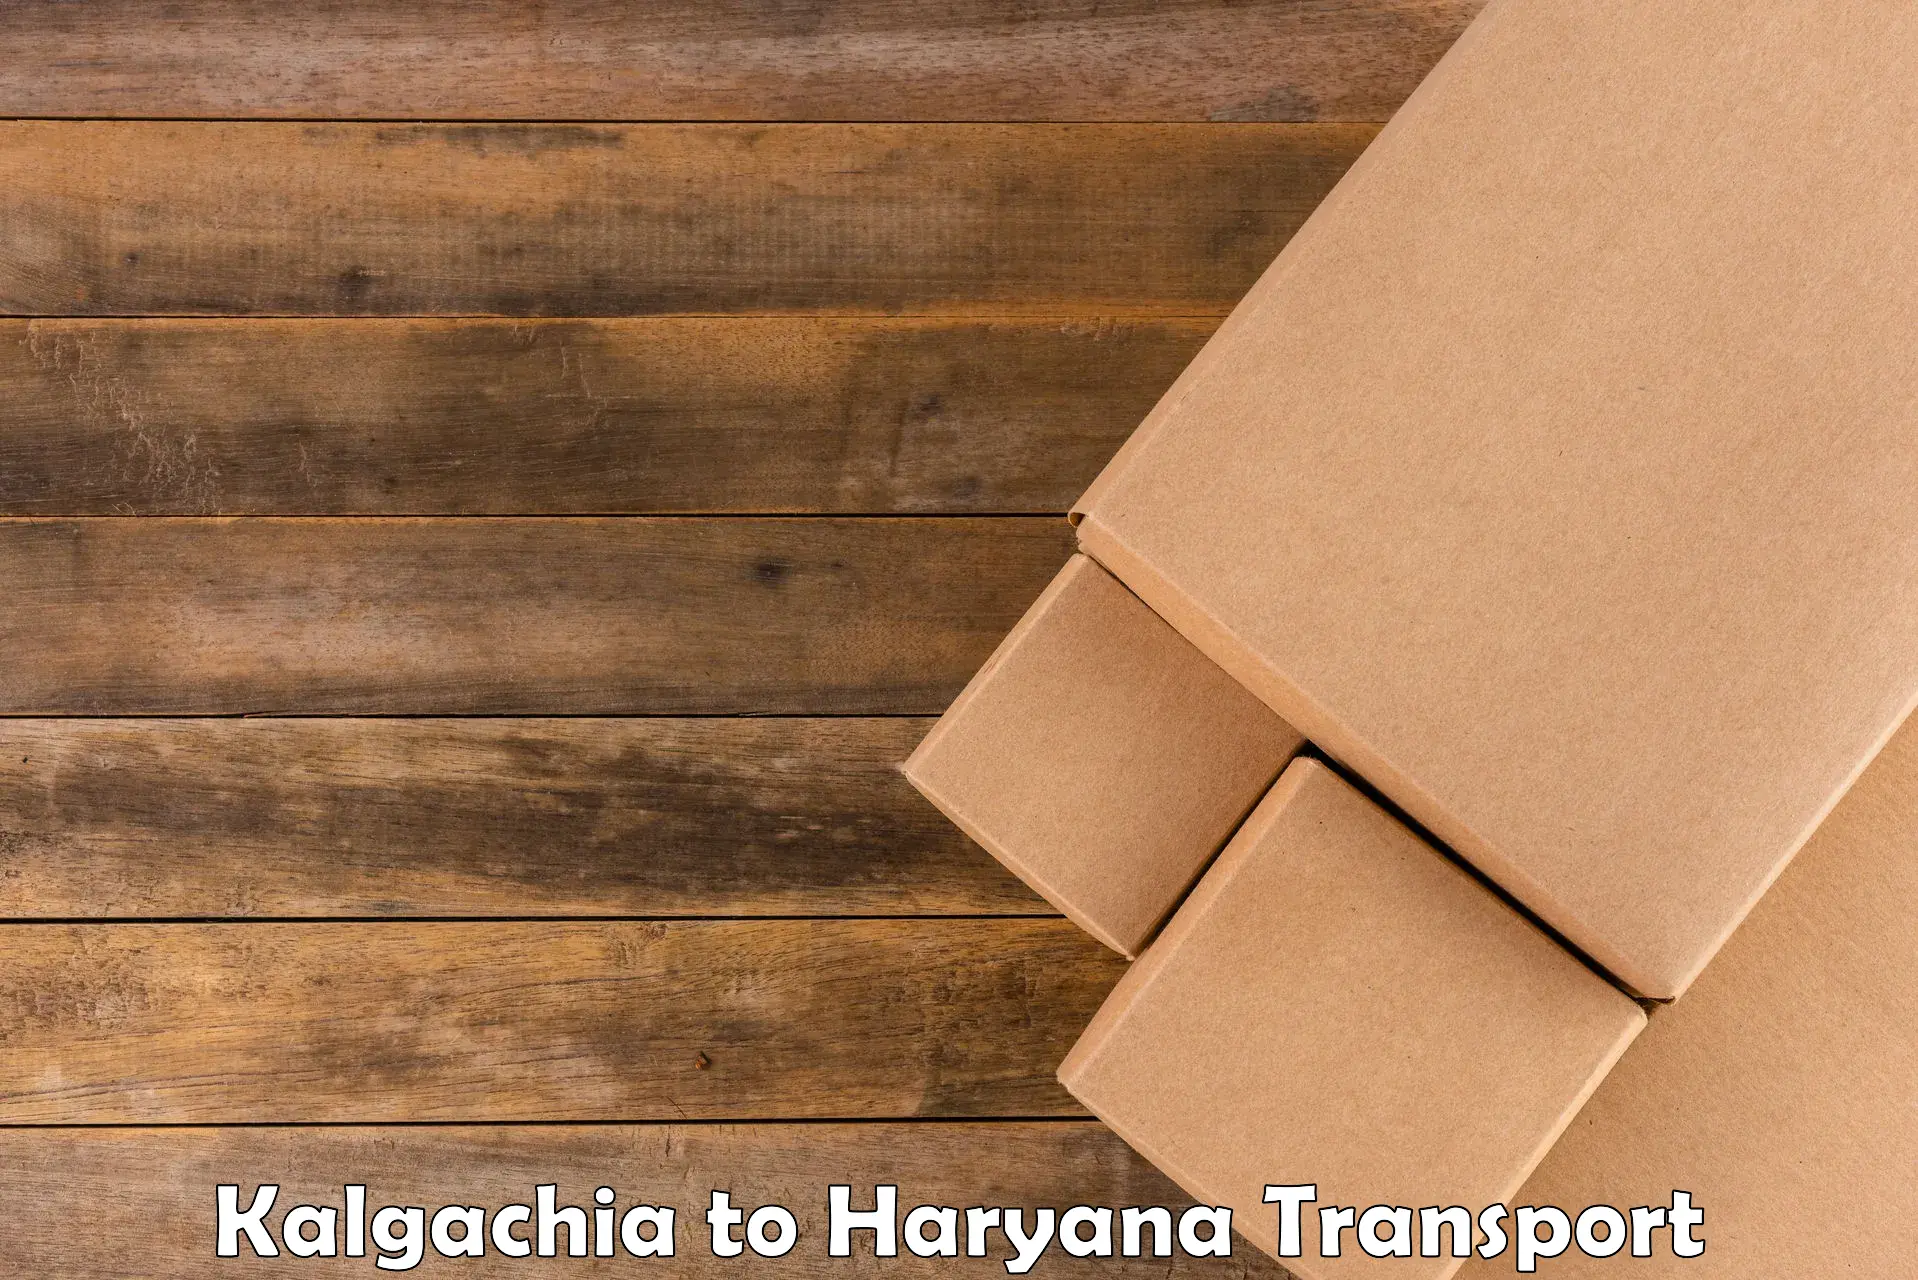 Shipping services Kalgachia to Panipat